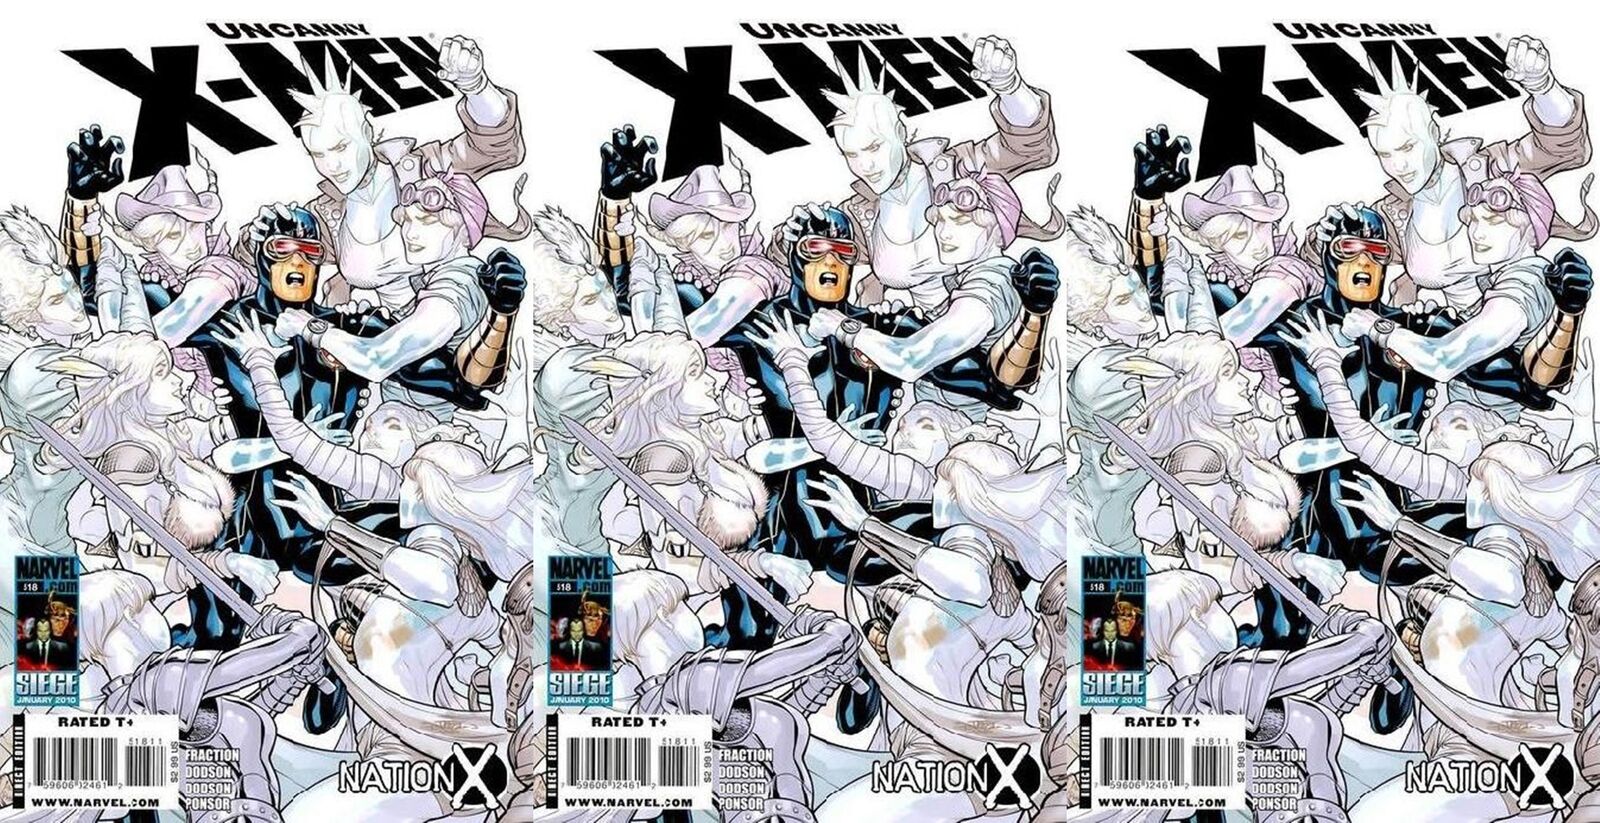 The Uncanny X-Men #518 Volume 1 (1981-2011) Marvel Comics - 3 Comics